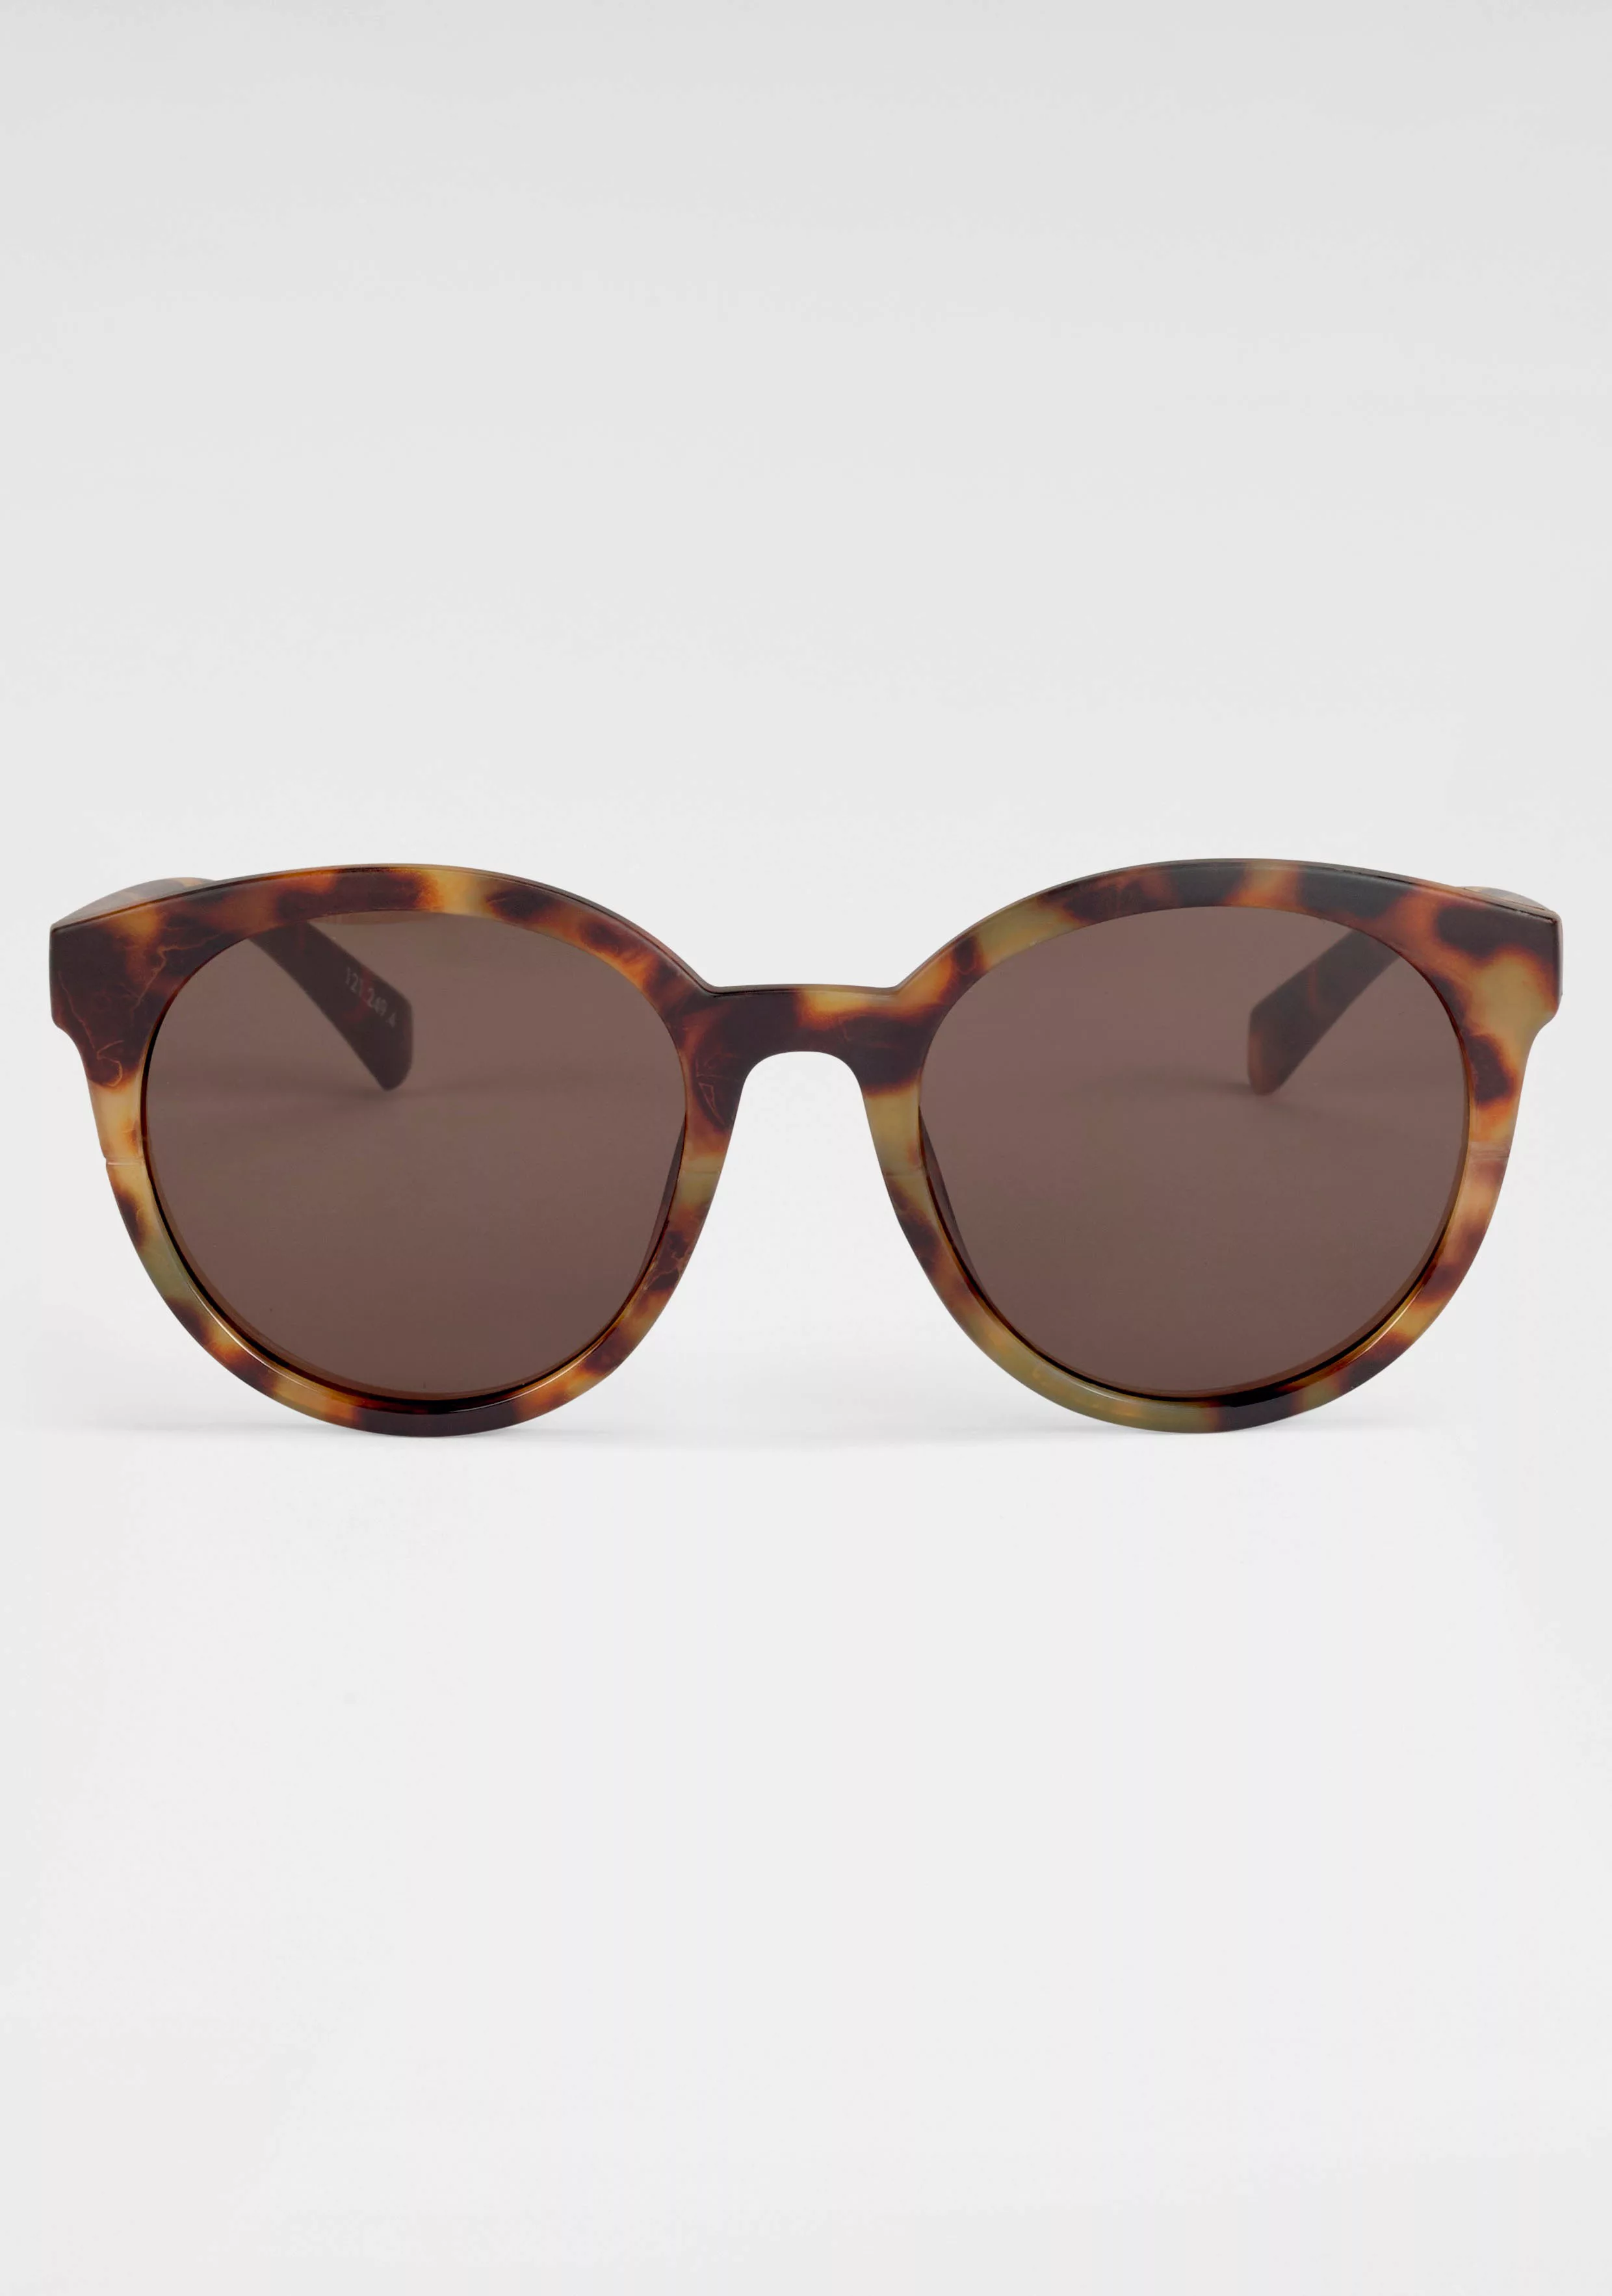 catwalk Eyewear Sonnenbrille, Damen-Sonnenbrille günstig online kaufen